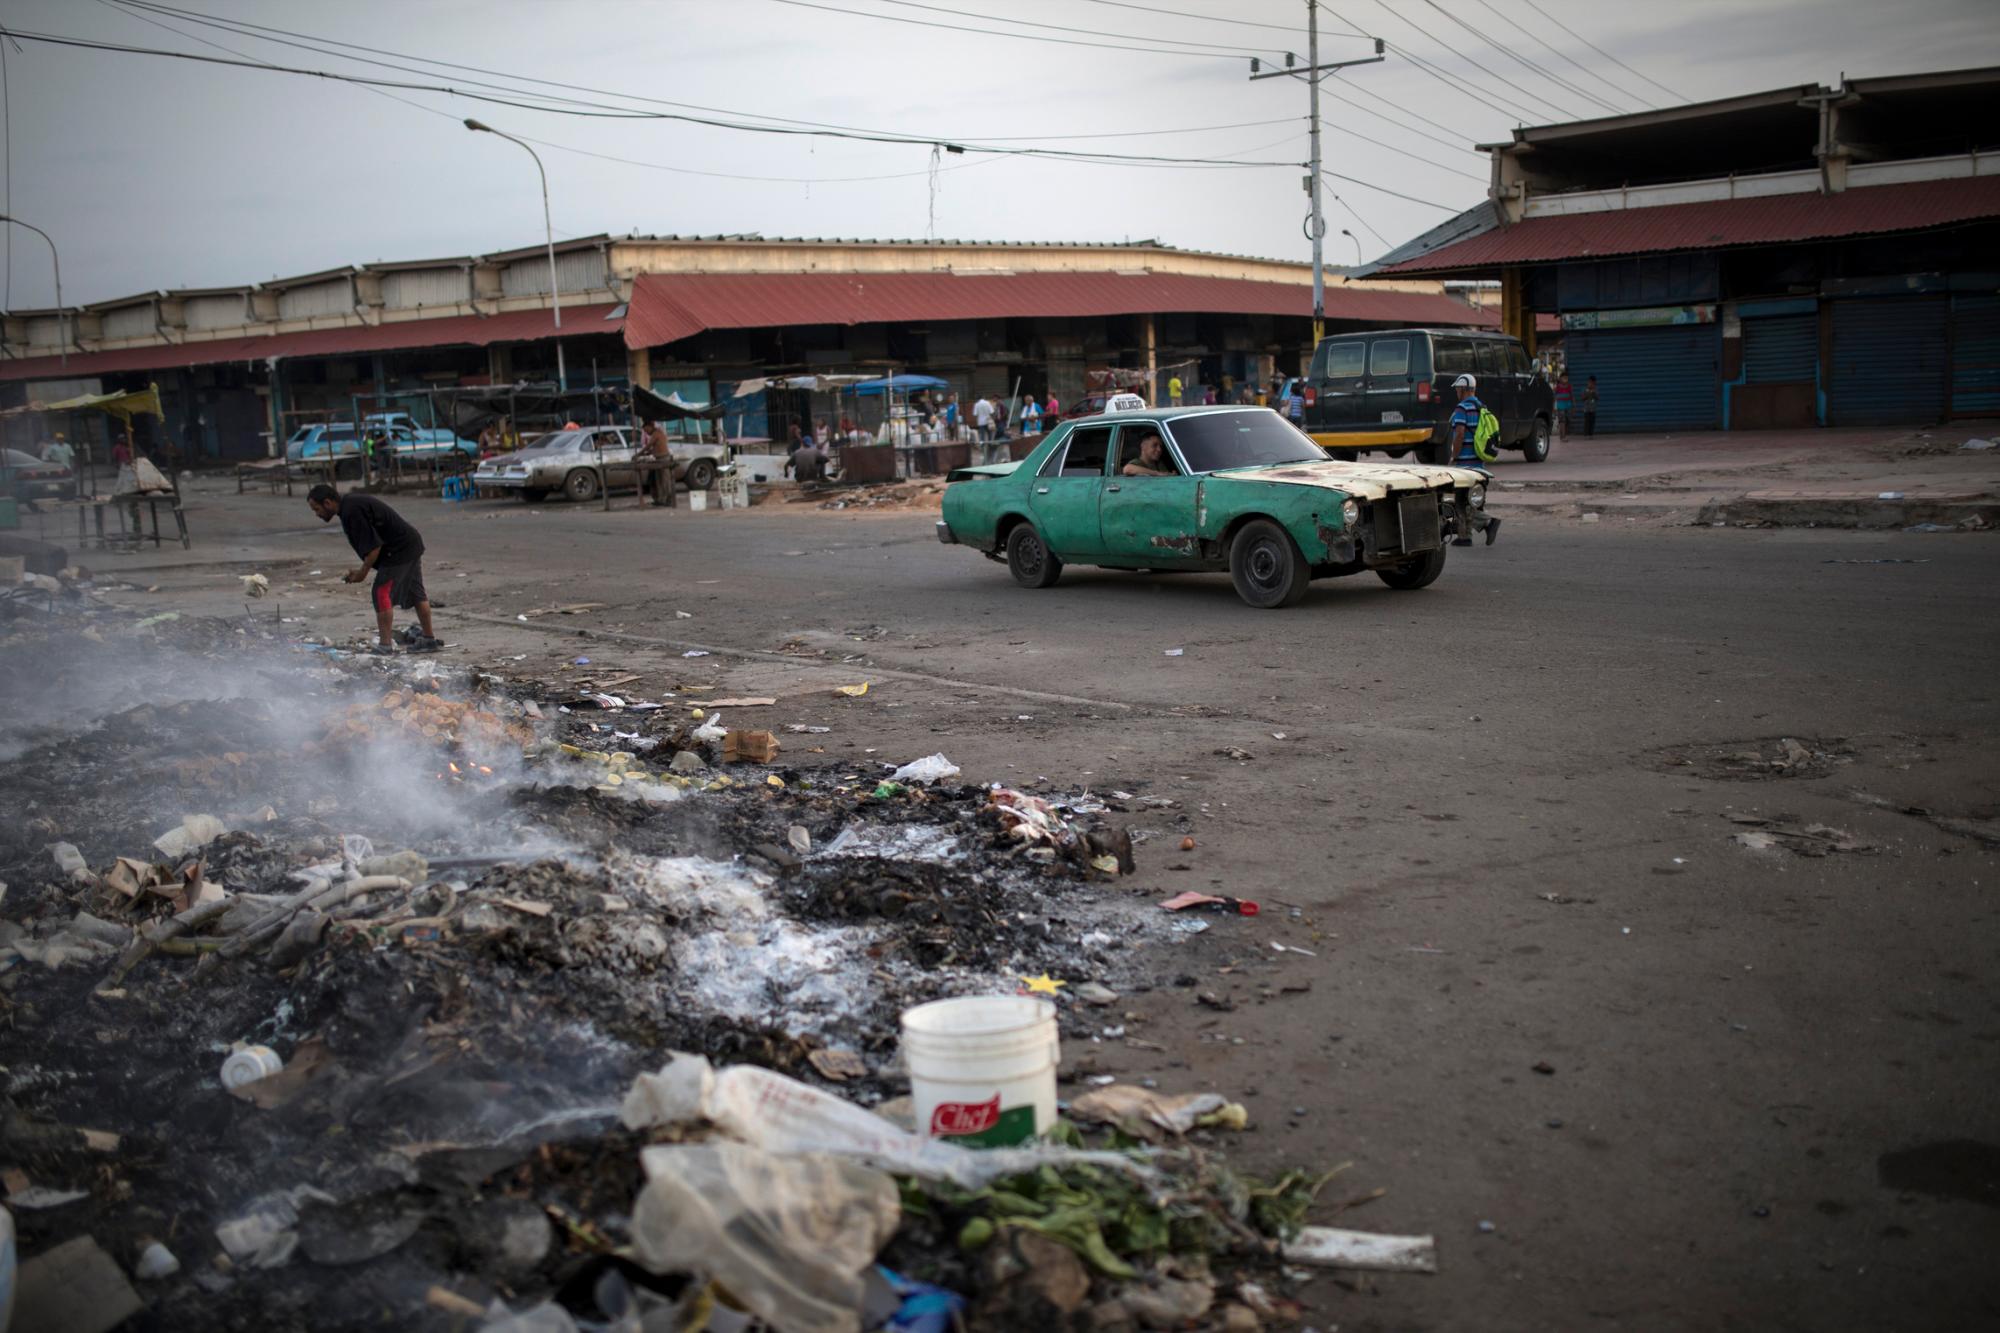 En la imagen, tomada el 14 de mayo de 2019, un hombre rebusca entre la basura en el exterior de un mercado en Maracaibo, Venezuela. A medida que el enfrentamiento político se prolonga, también lo hace la vida en Maracaibo. Algunos revuelven en la basura y buscan comida.